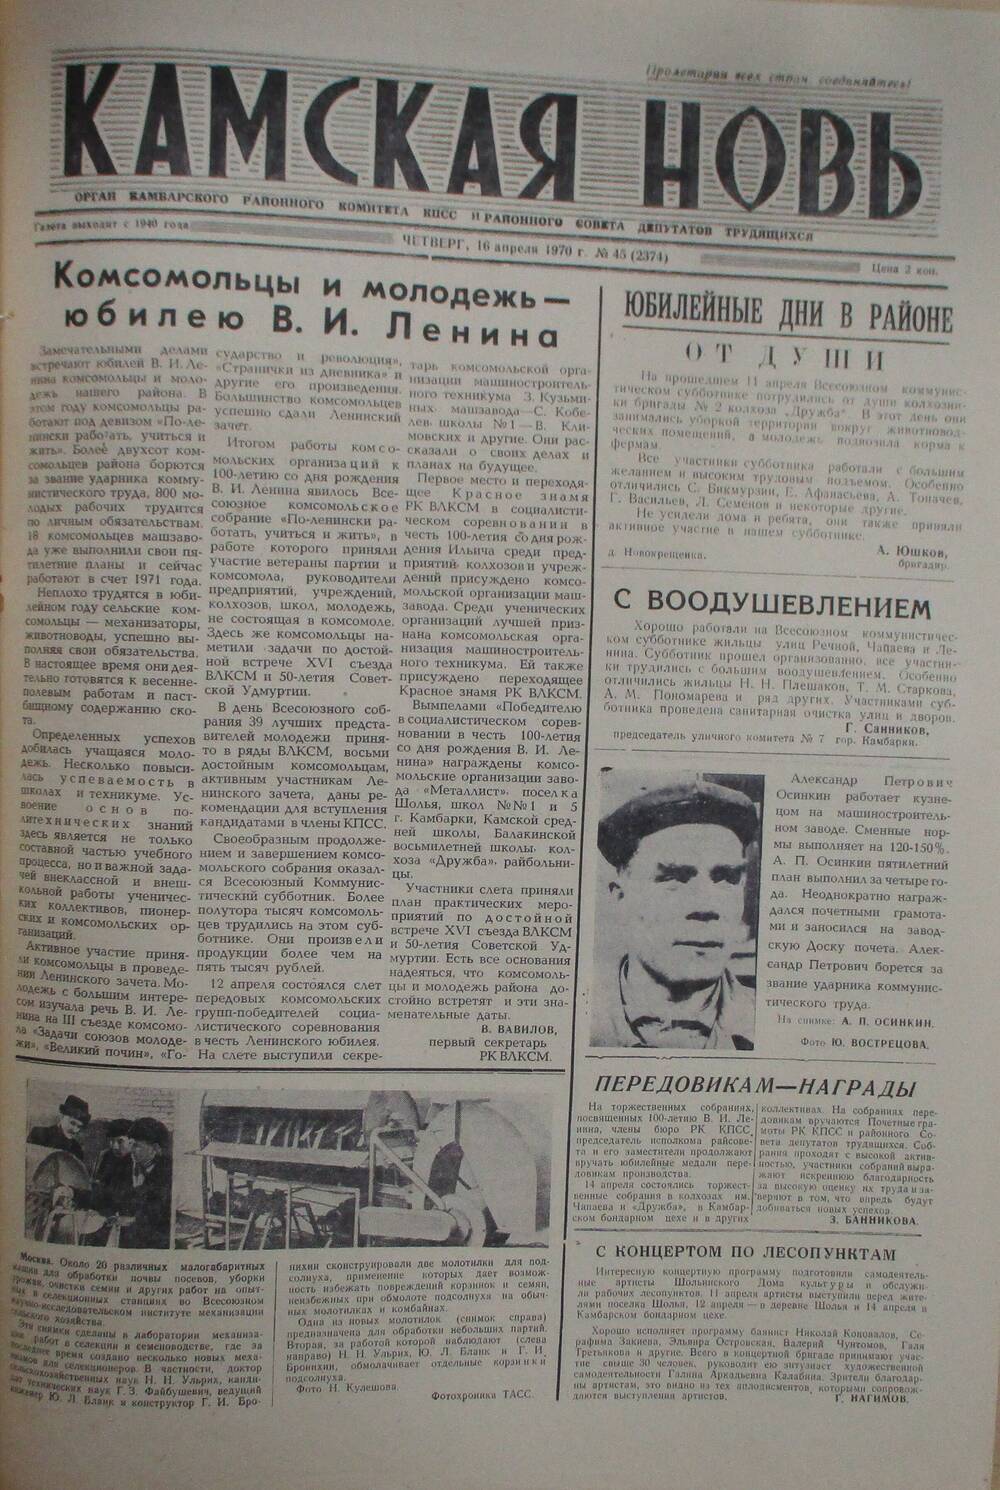 Газеты Камская новь за 1970 год. с №1 по №83., №45.